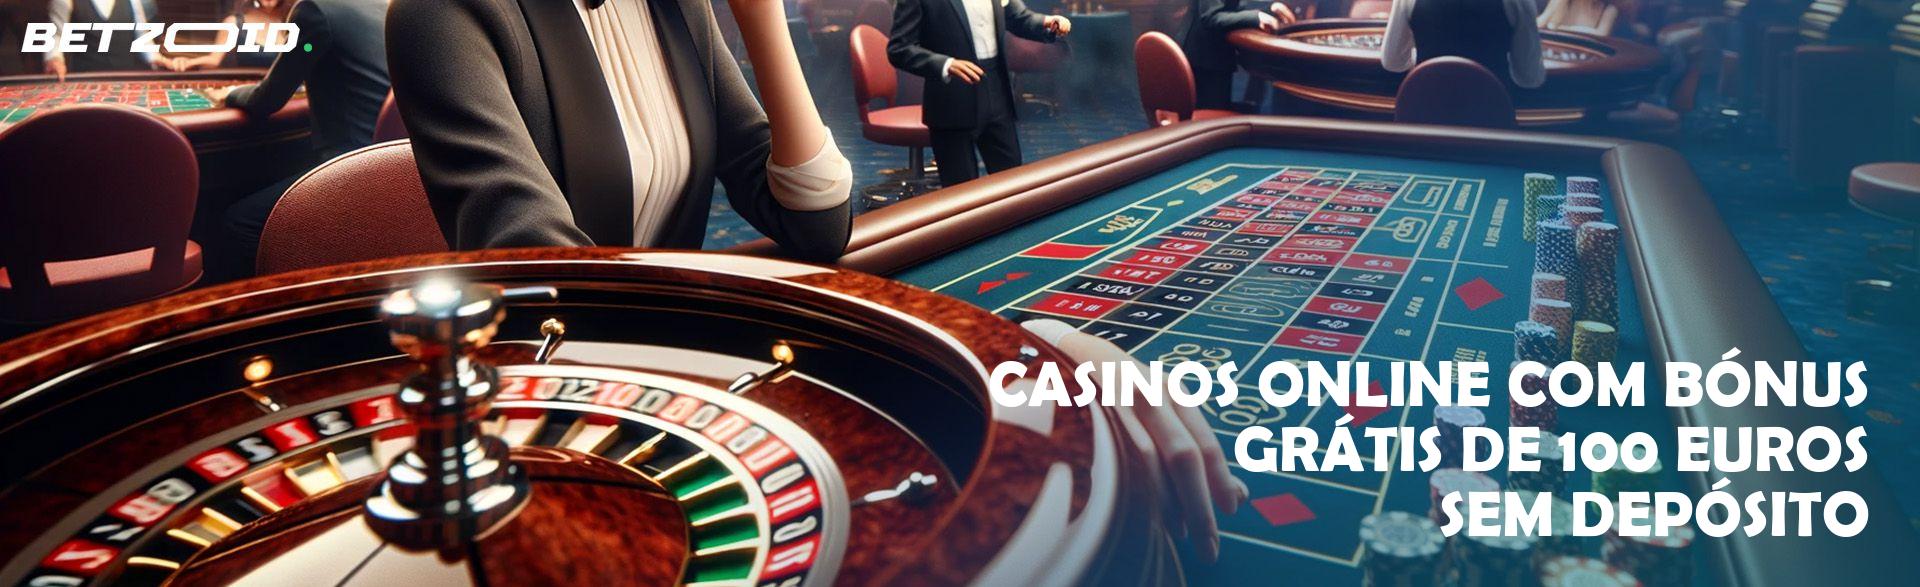 Casinos Online com Bónus Grátis de 100 Euros sem Depósito.